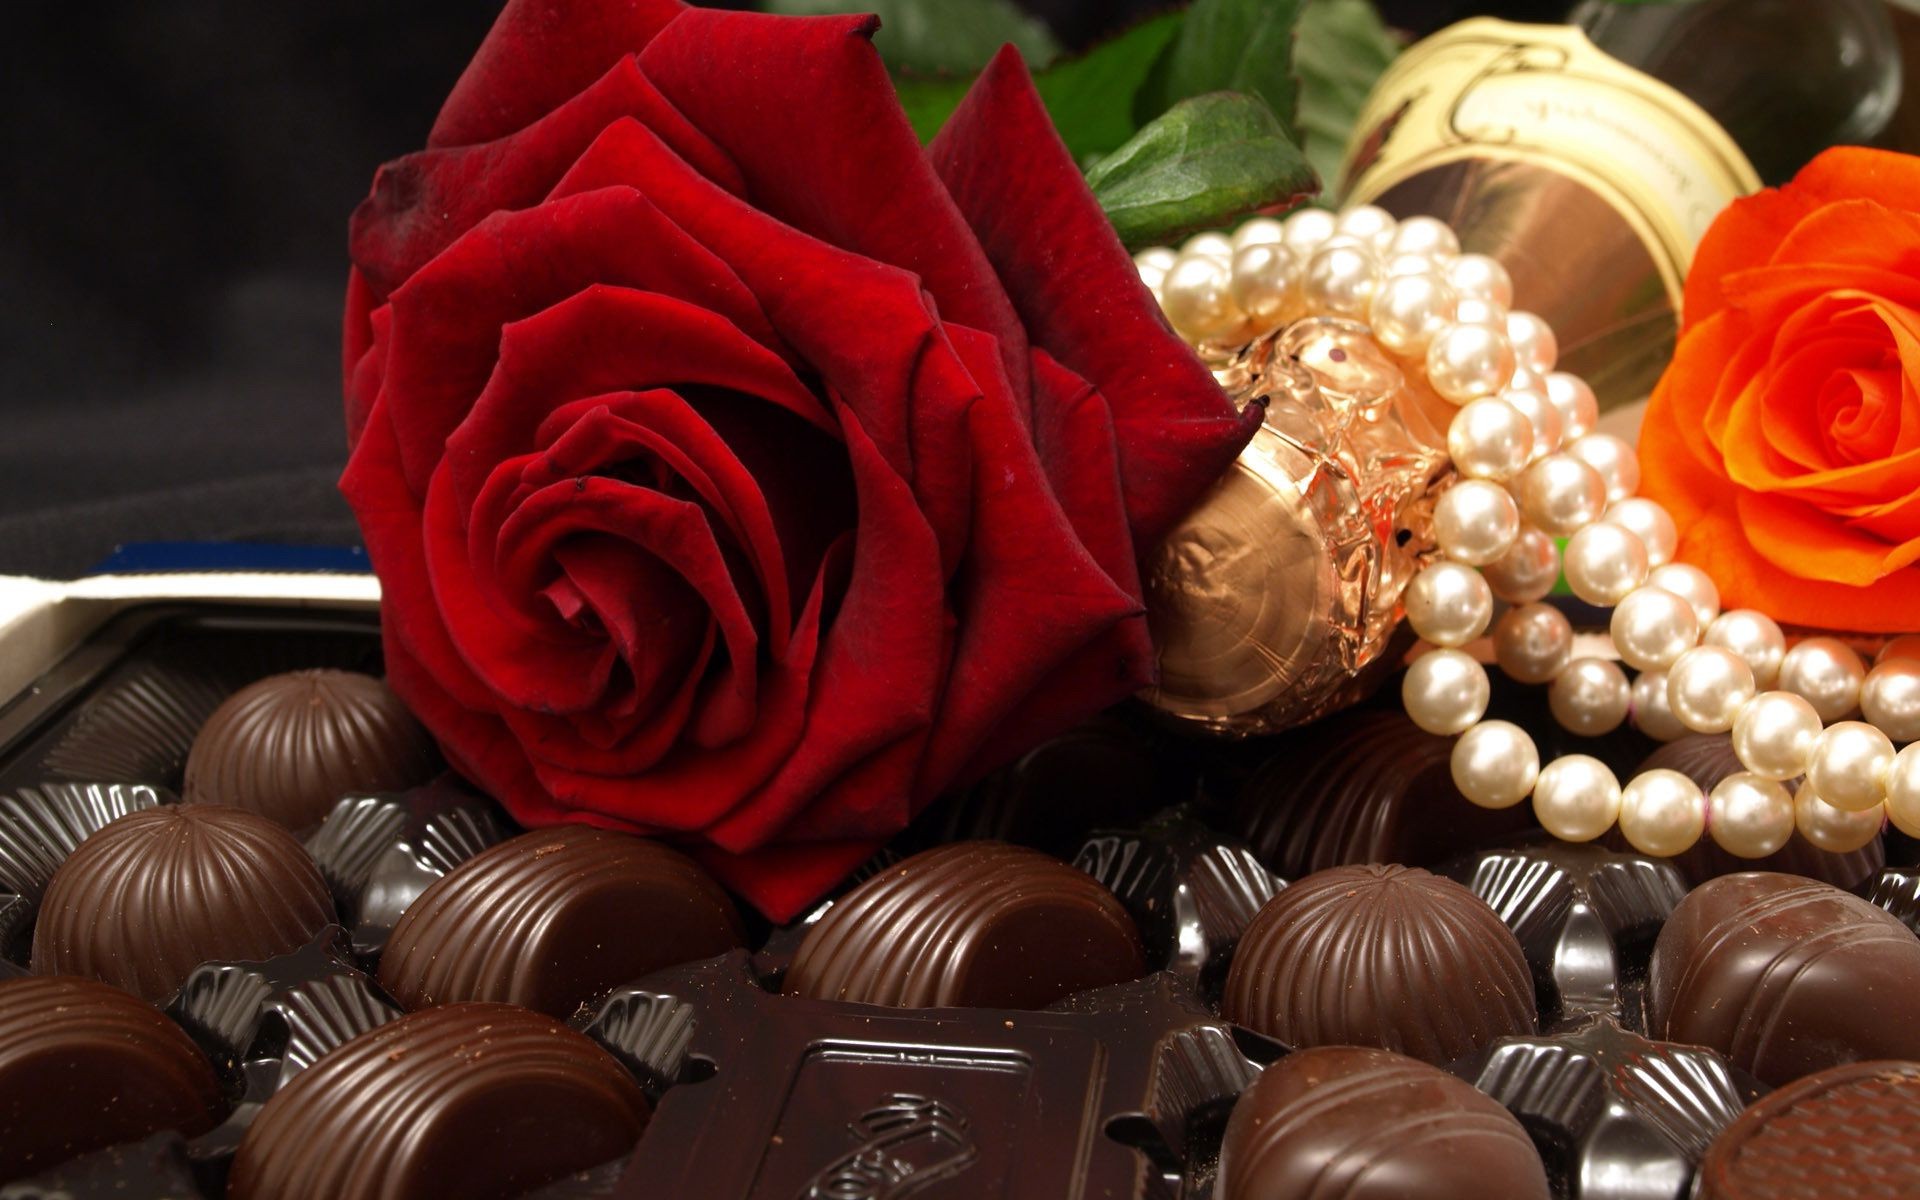 еда и напитки романтика конфеты шоколад подарок любовь романтический темный сахар свадьба кондитерское изделие вид пралине роза